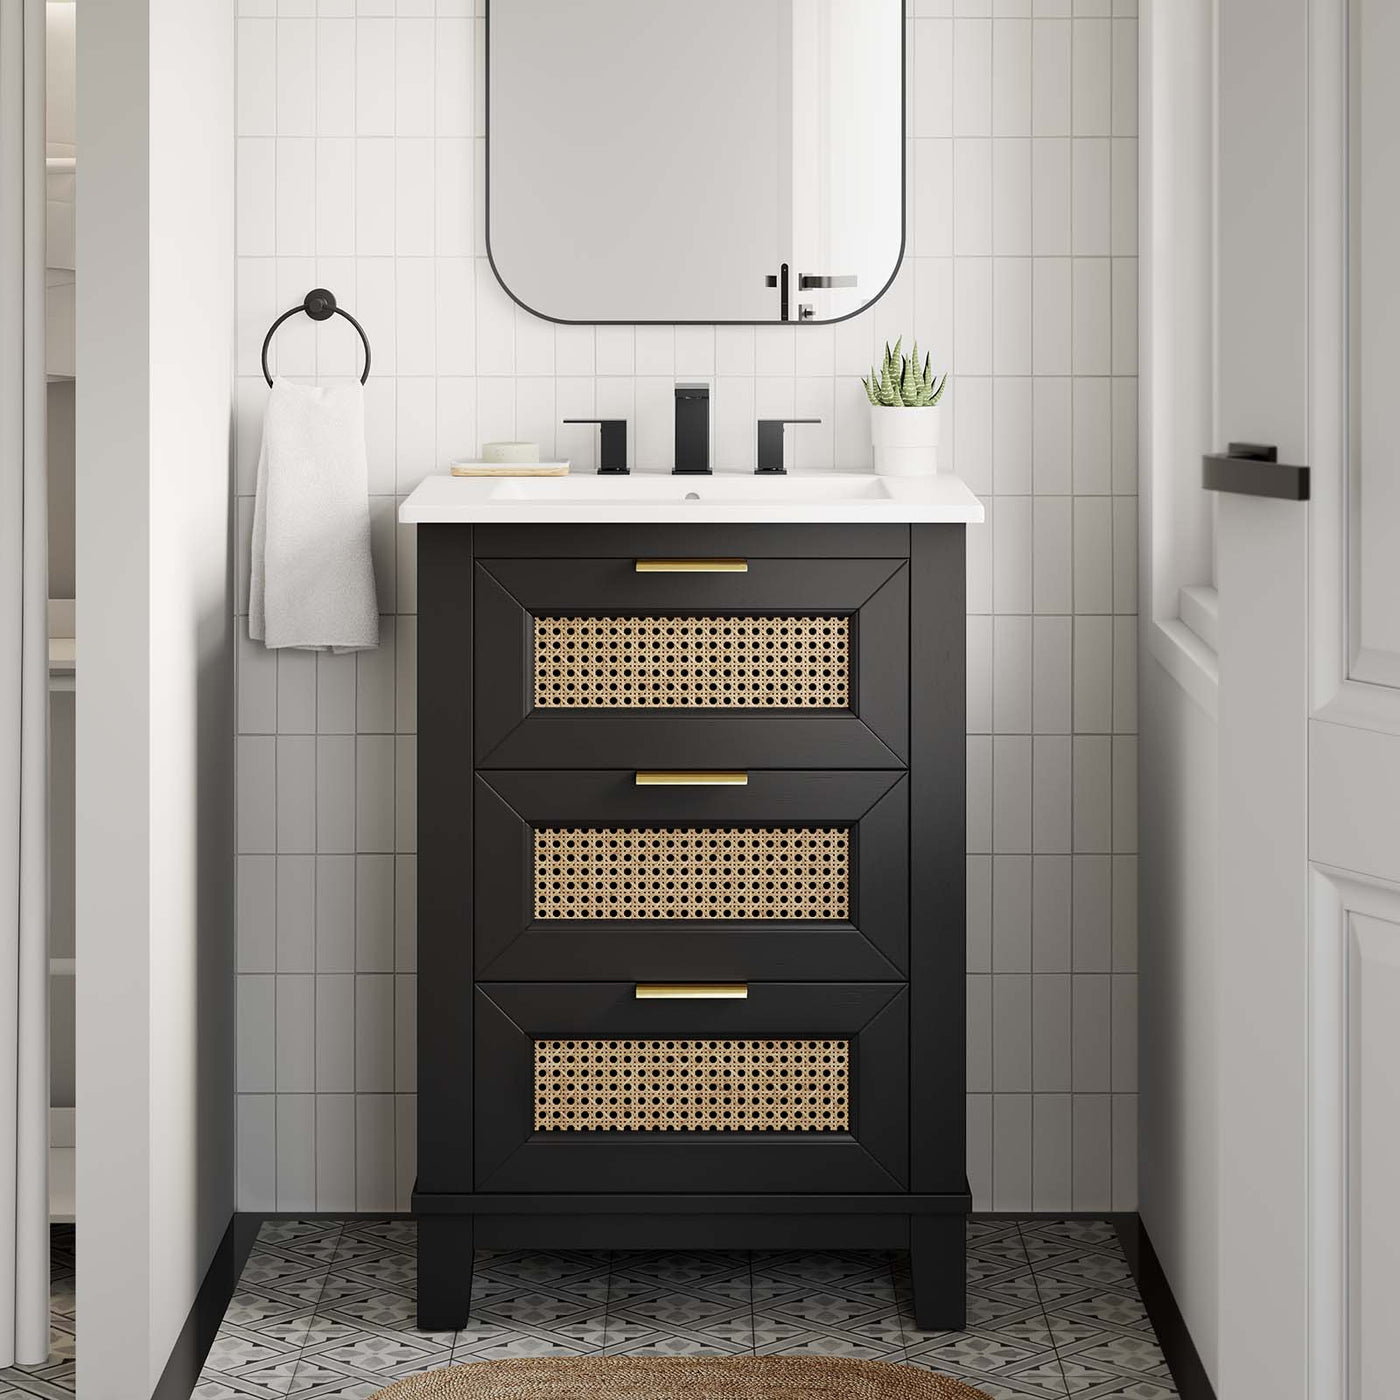 Solid Wood Bathroom Cabinets